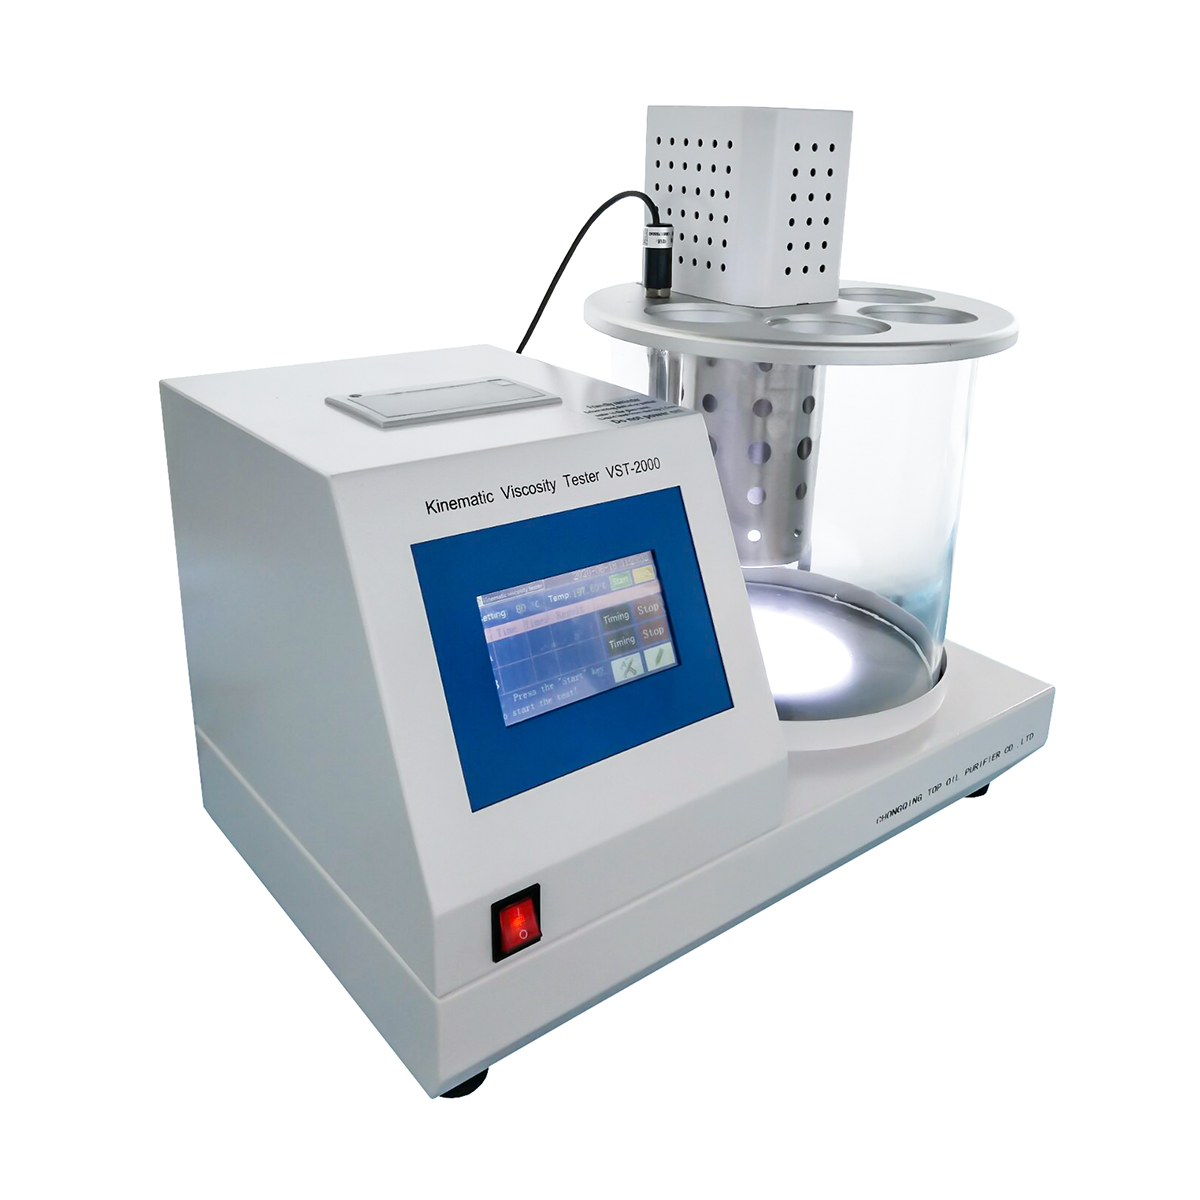 Probador de viscosidad cinemática ASTMD445 VST-2000